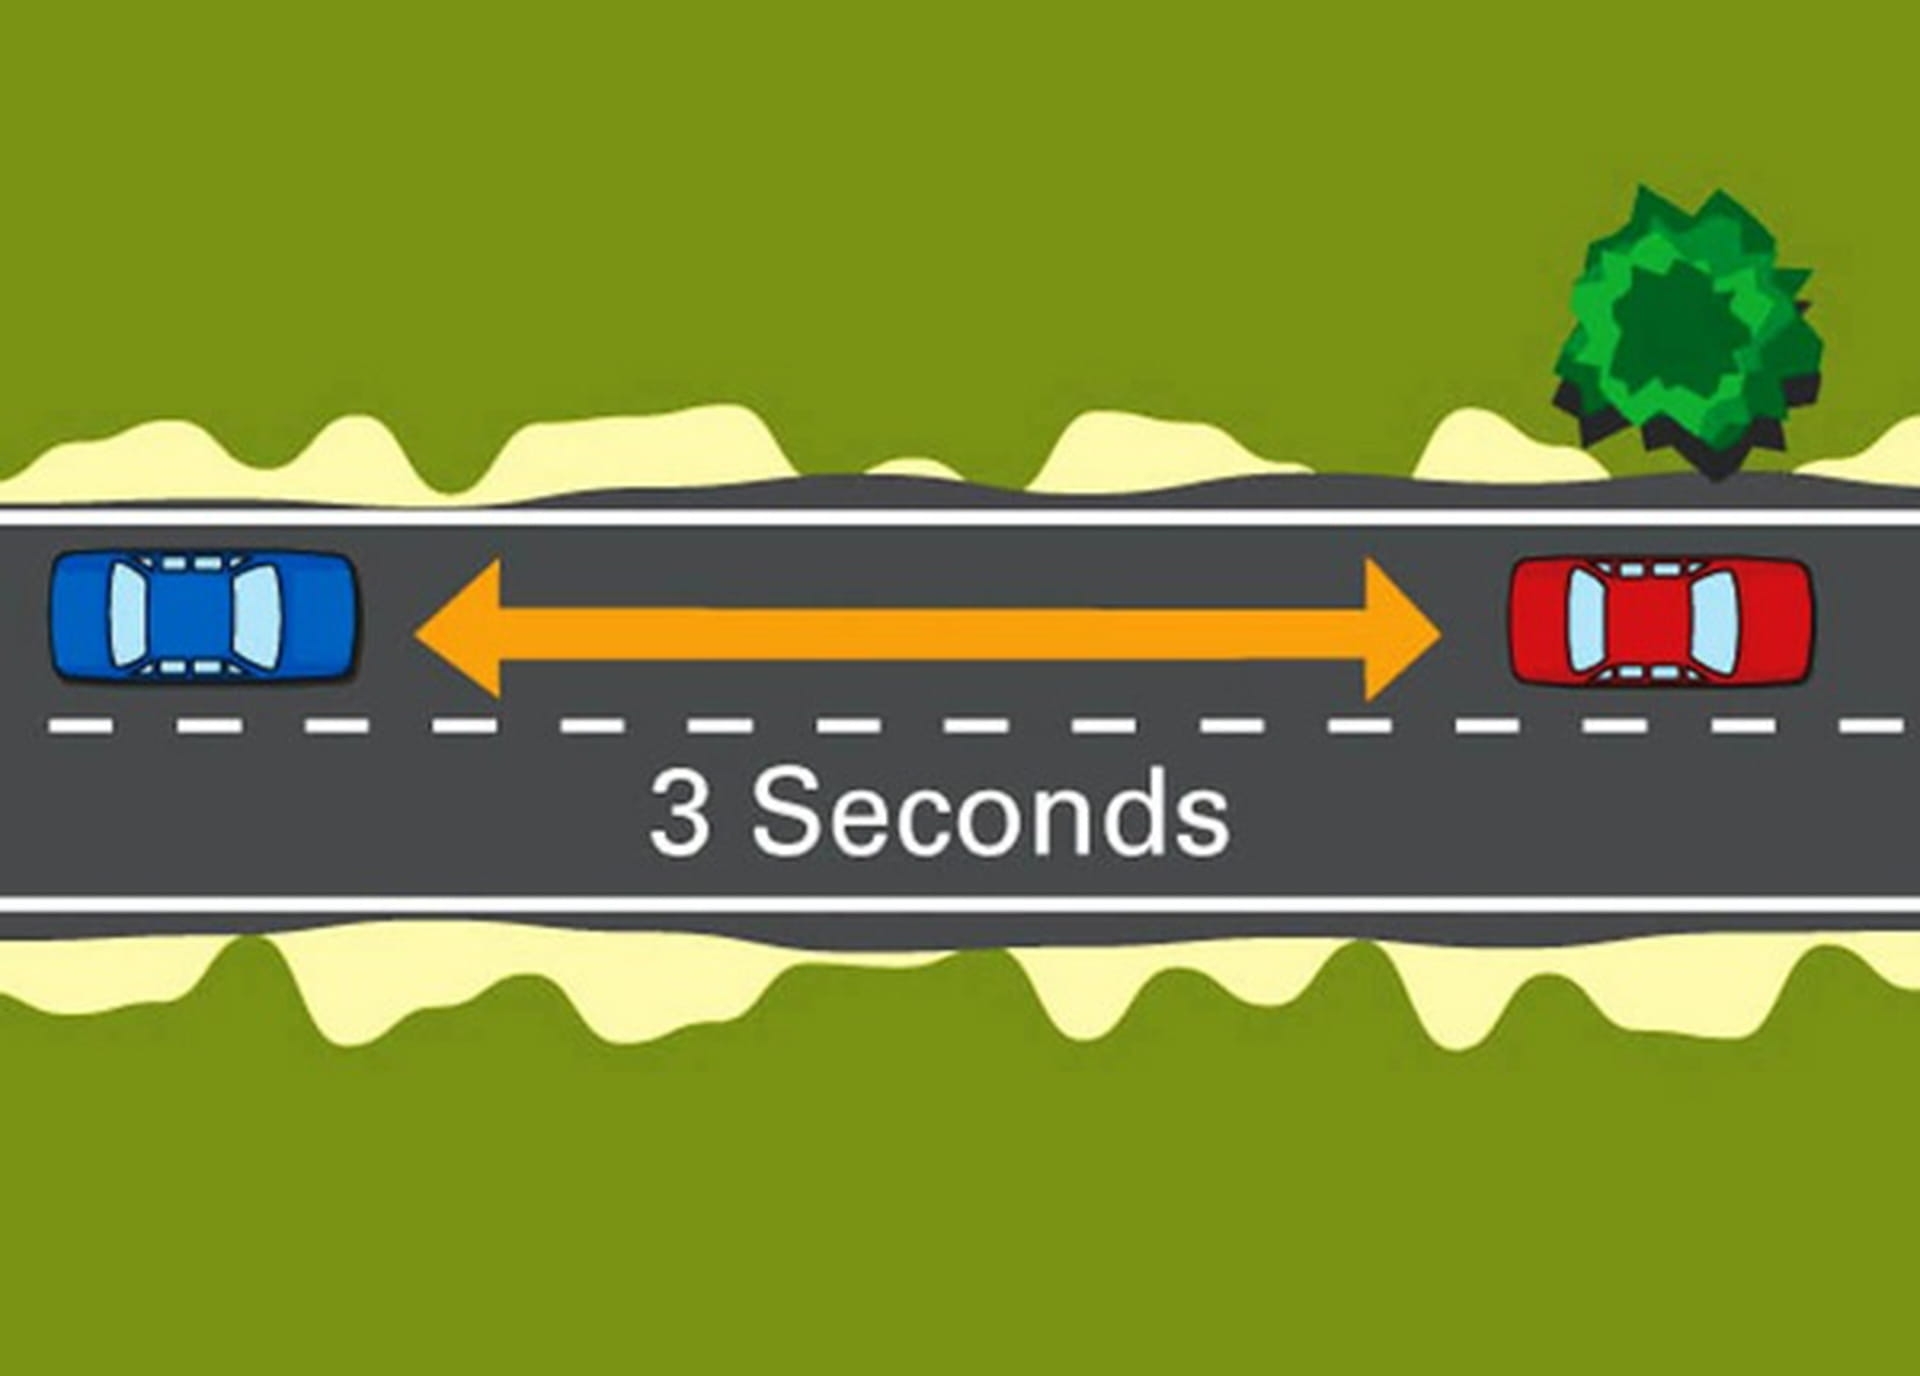 Расстояние между машинами на дороге. Дистанция между автомобилями. Безопасная дистанция. Дистанция ПДД. Правило 2 секунд на дороге.